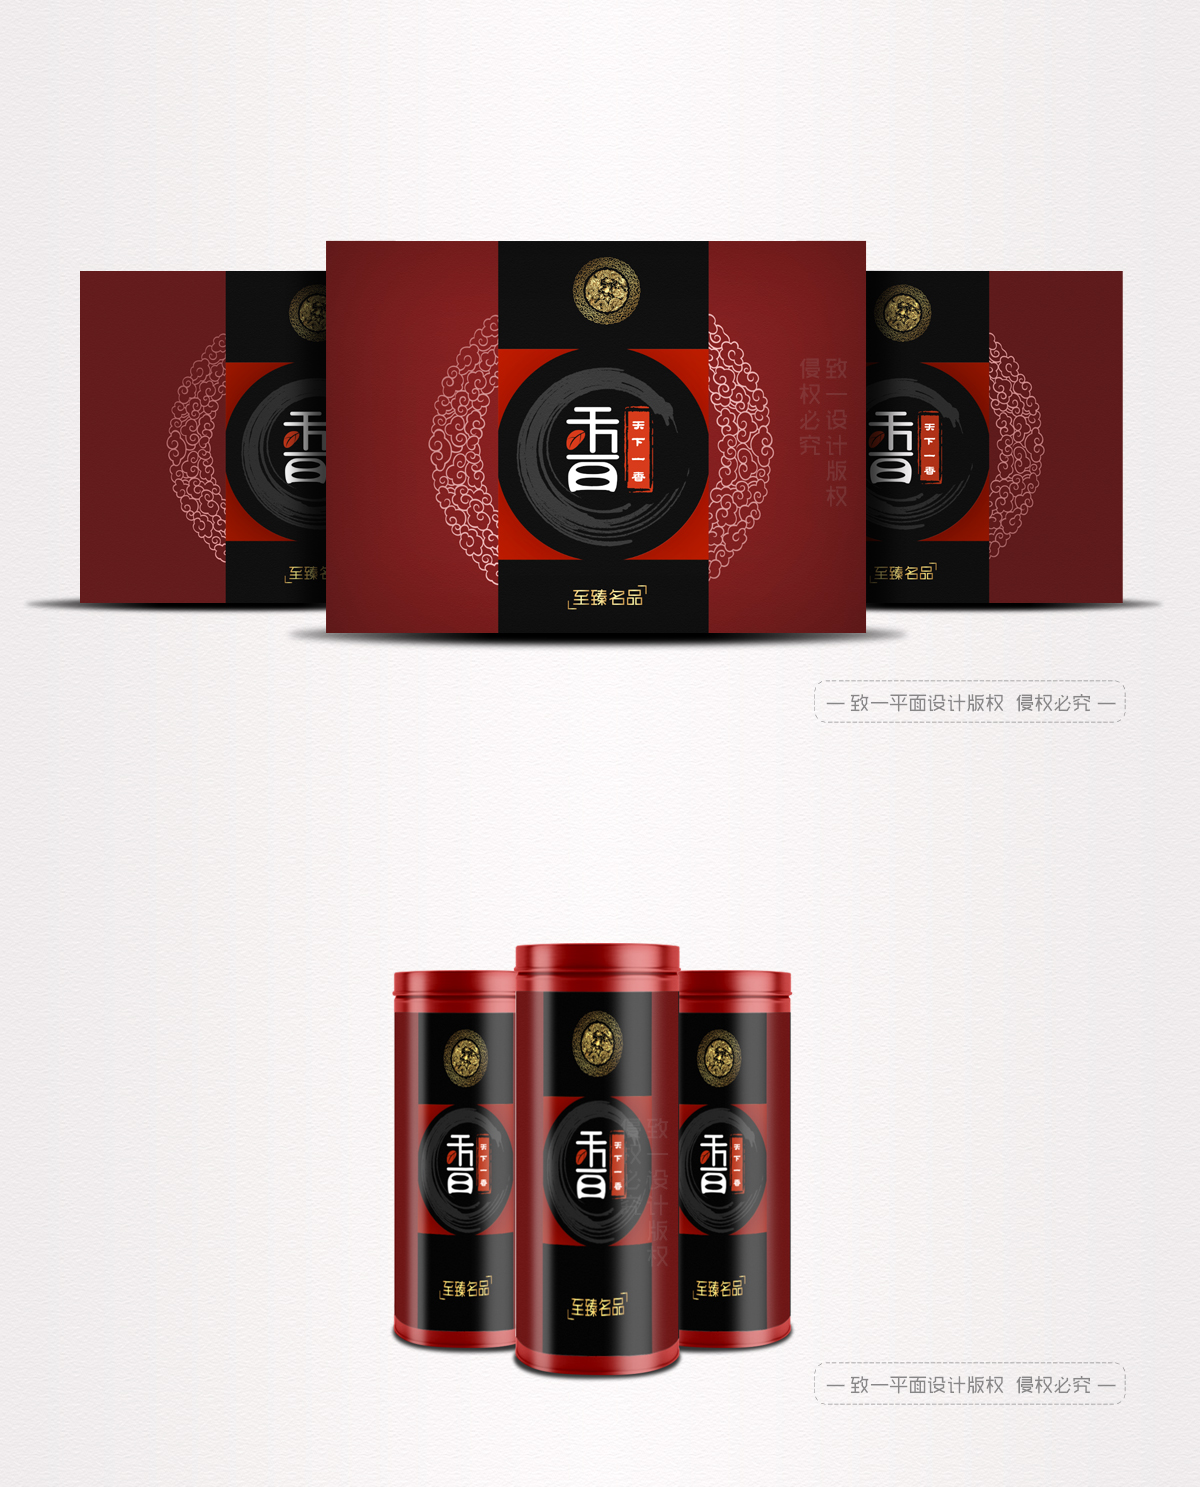 高端茶叶礼品盒系列设计 -- 致一包装设计公司作品